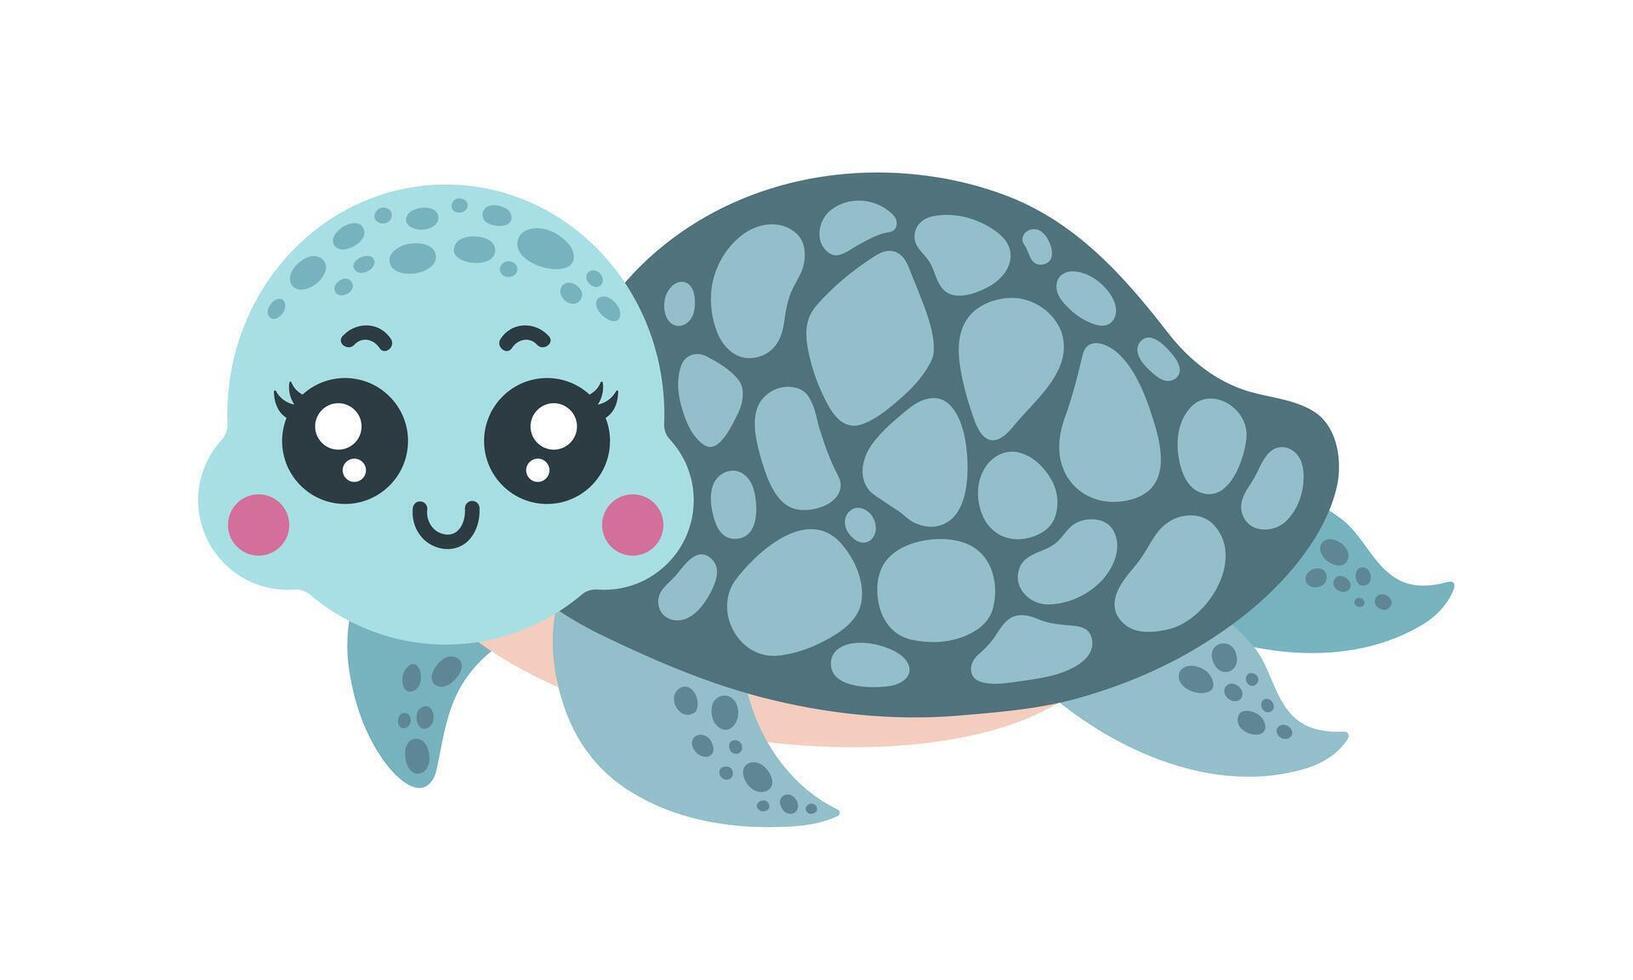 söt sköldpadda vektor illustration. rolig under vattnet djur- simmar och ler. färgrik hav sällskapsdjur med skal. Lycklig akvarium reptil, vänlig sköldpadda. tropisk karaktär för barn, ungar. tecknad serie konst